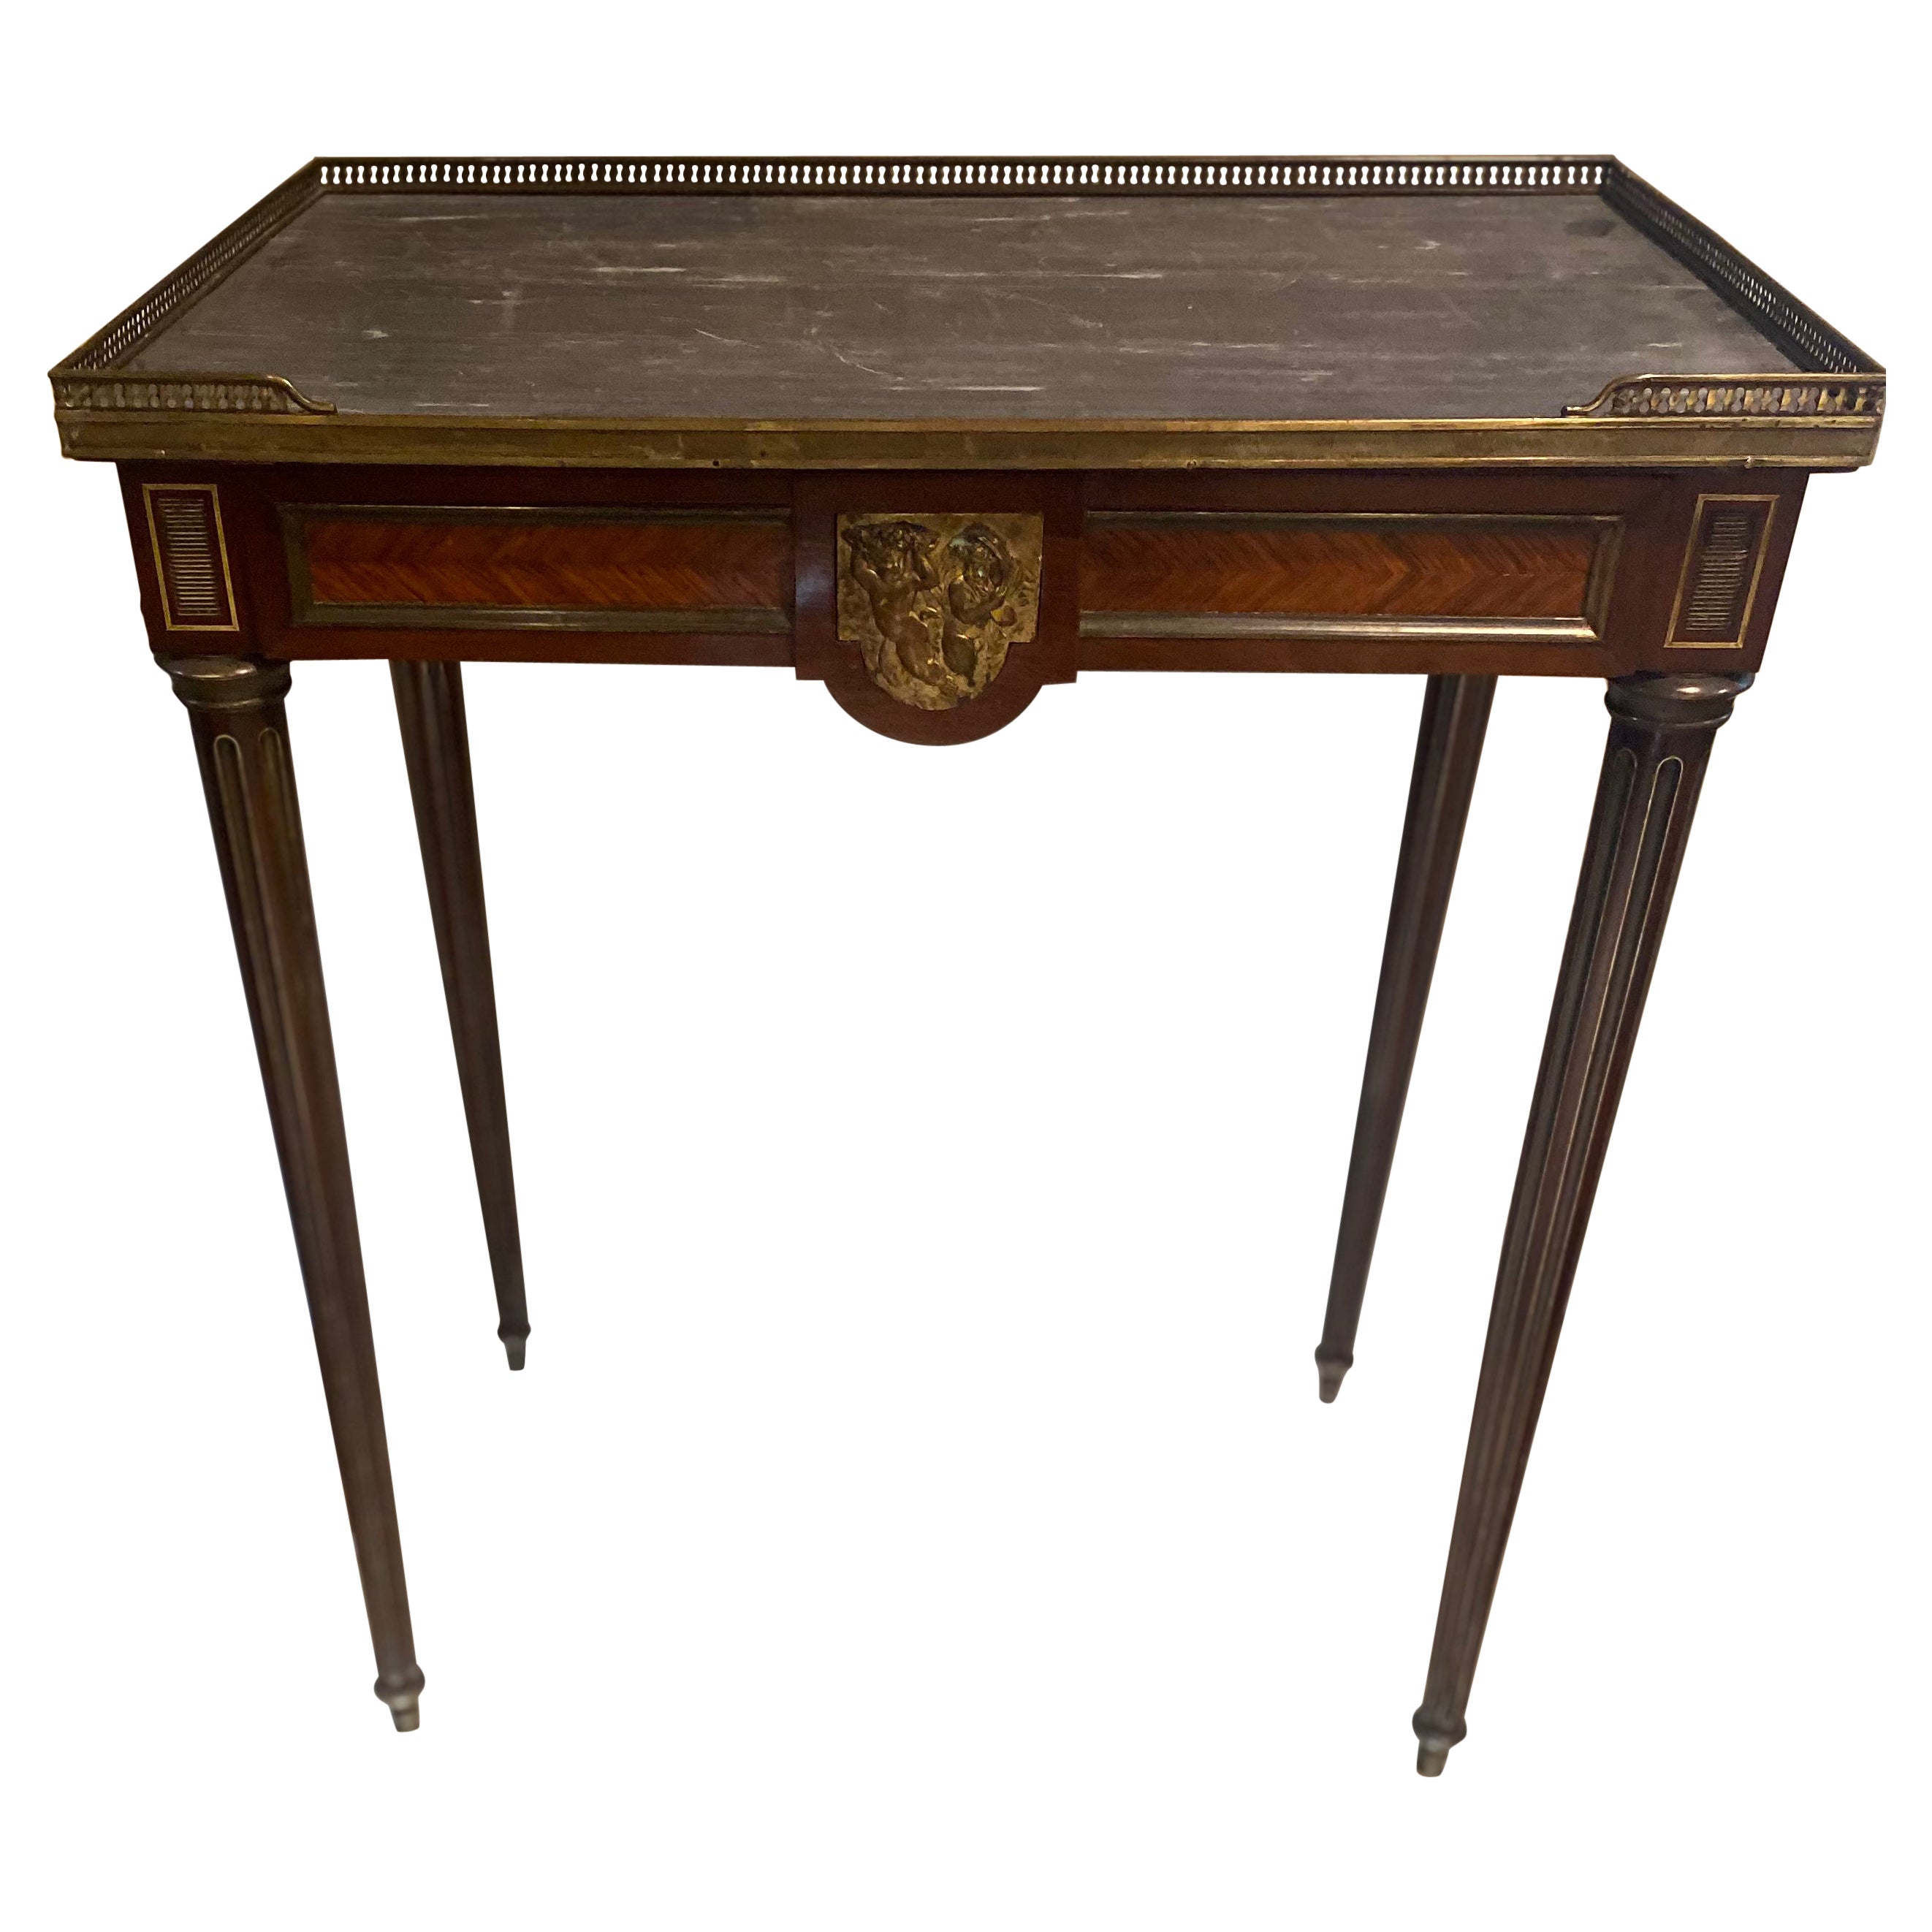 Table d'appoint néoclassique française du XVIIIe siècle